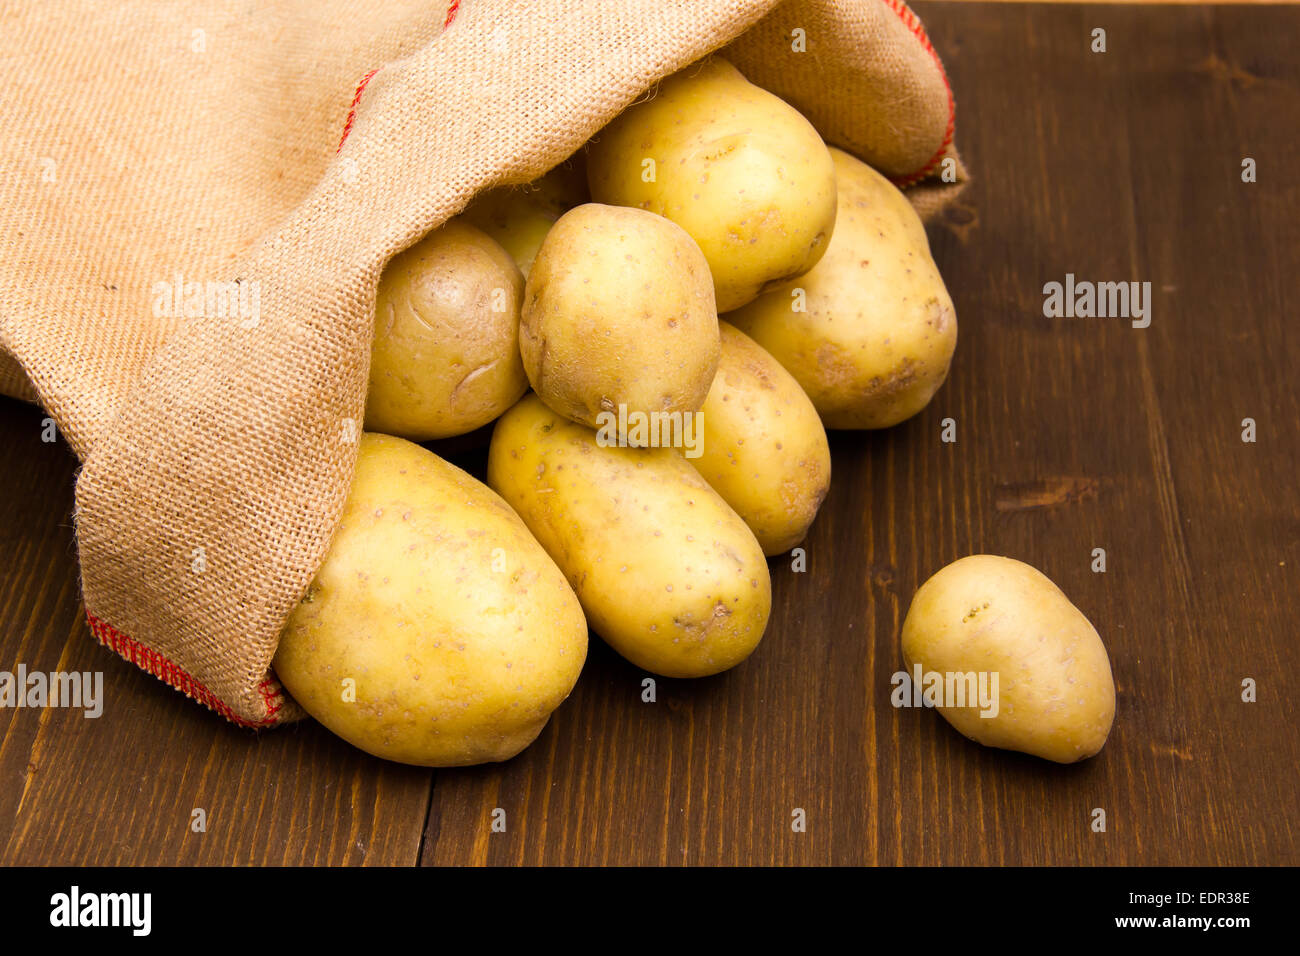 Sacco di patate sul tavolo in legno visto da vicino Foto Stock